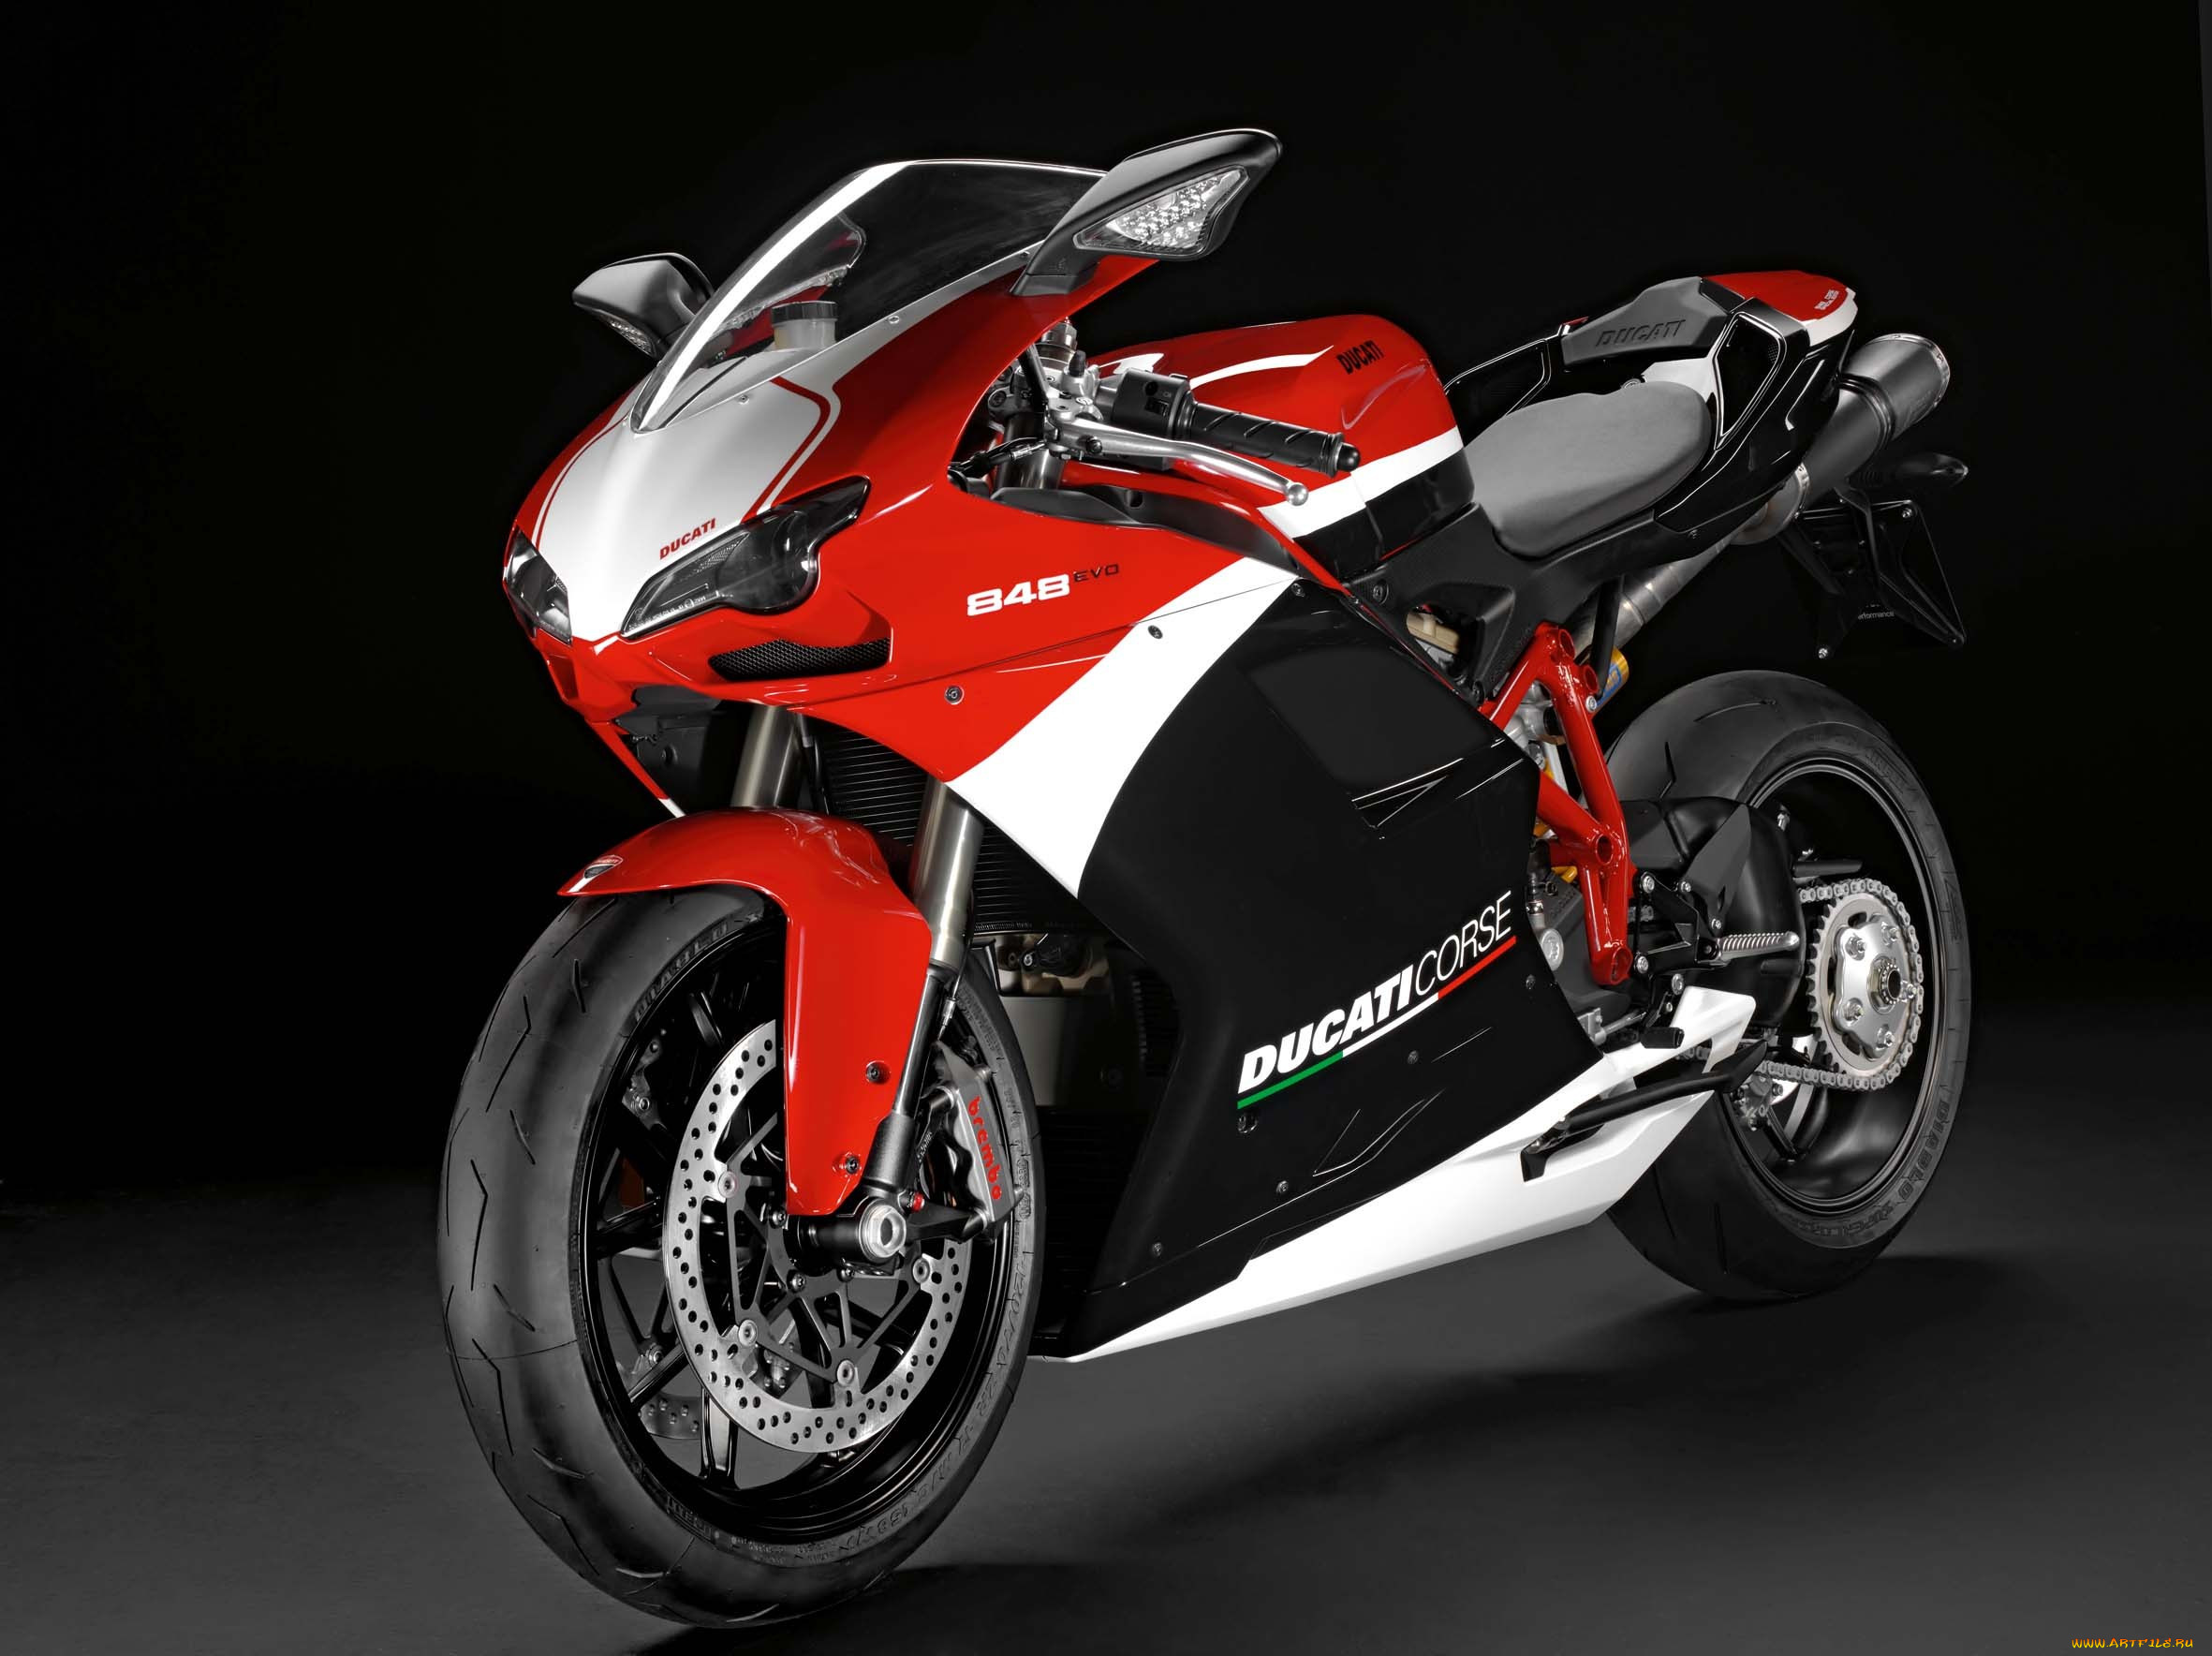 2012-ducati-superbike-848-evo-corse-special-edition, , ducati, corse